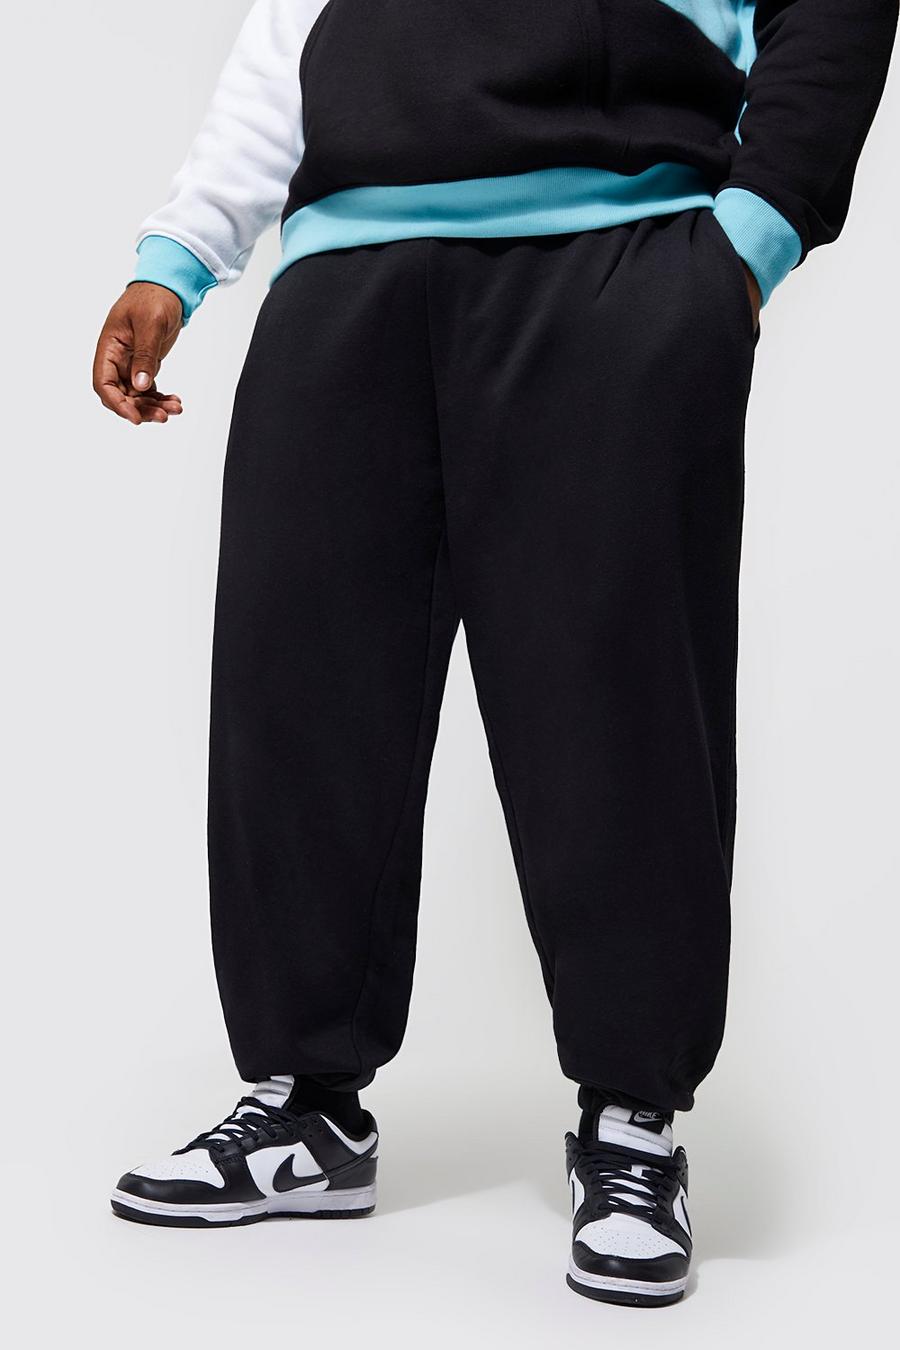 Pantaloni tuta Plus Size Basic comodi in cotone REEL, Black negro